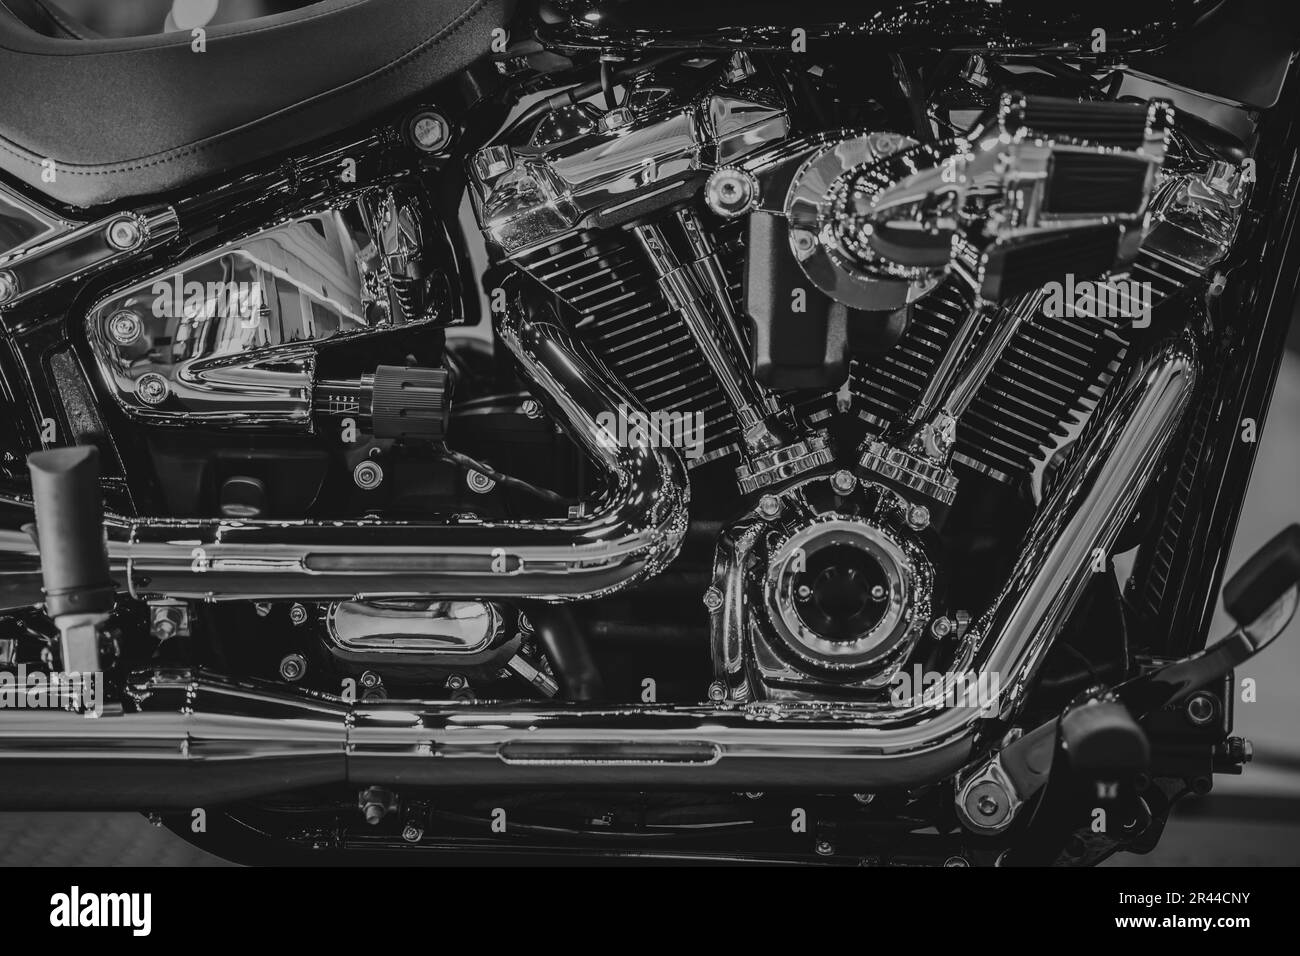 Chopper Motorcycle Engine High Performance, künstlerisches Luxus Design Street Bike in Schwarz und Weiß. Stockfoto